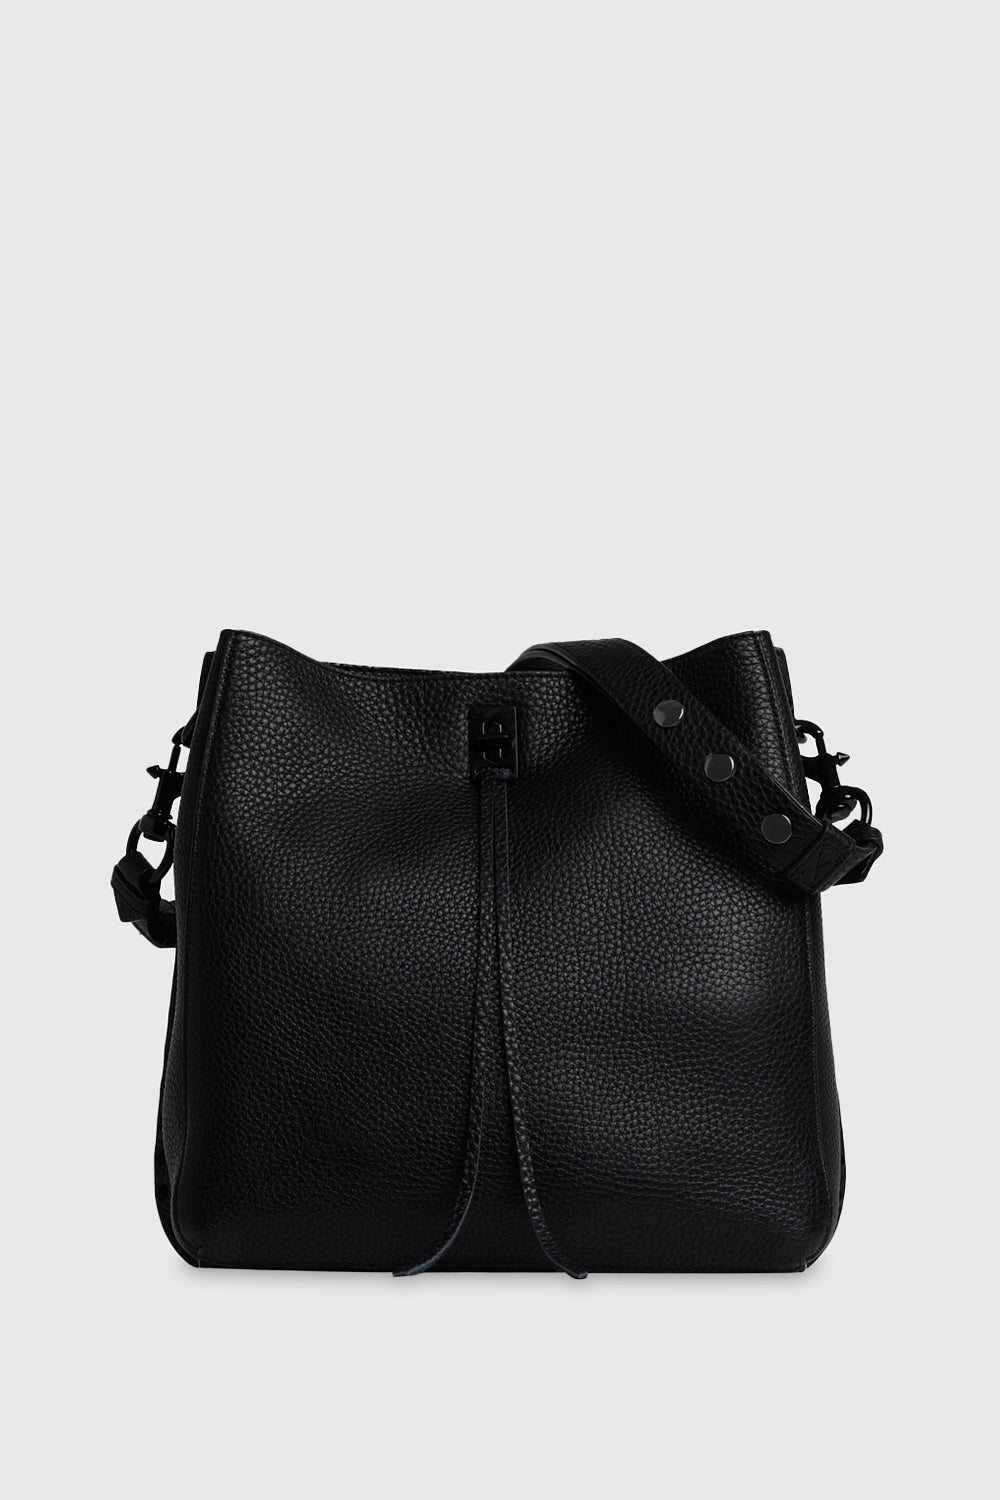 Korean Trendy Elegant Chain Shoulder Messenger Bags Botswana